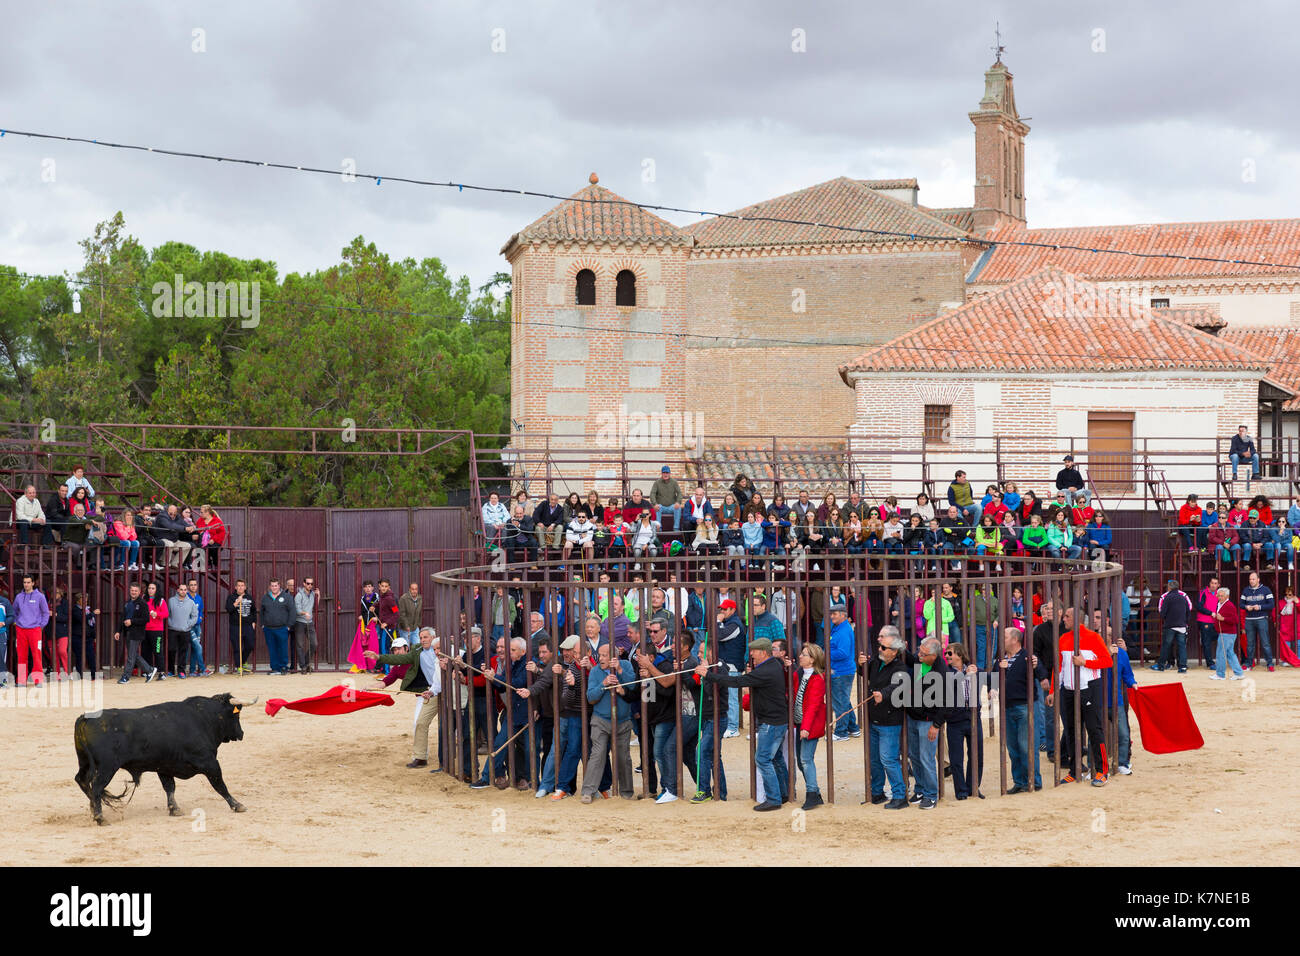 La population locale difficile bull avec drapeau rouge pendant le festival traditionnel à madrigal de los altas torres dans la province d'Avila, Espagne Banque D'Images